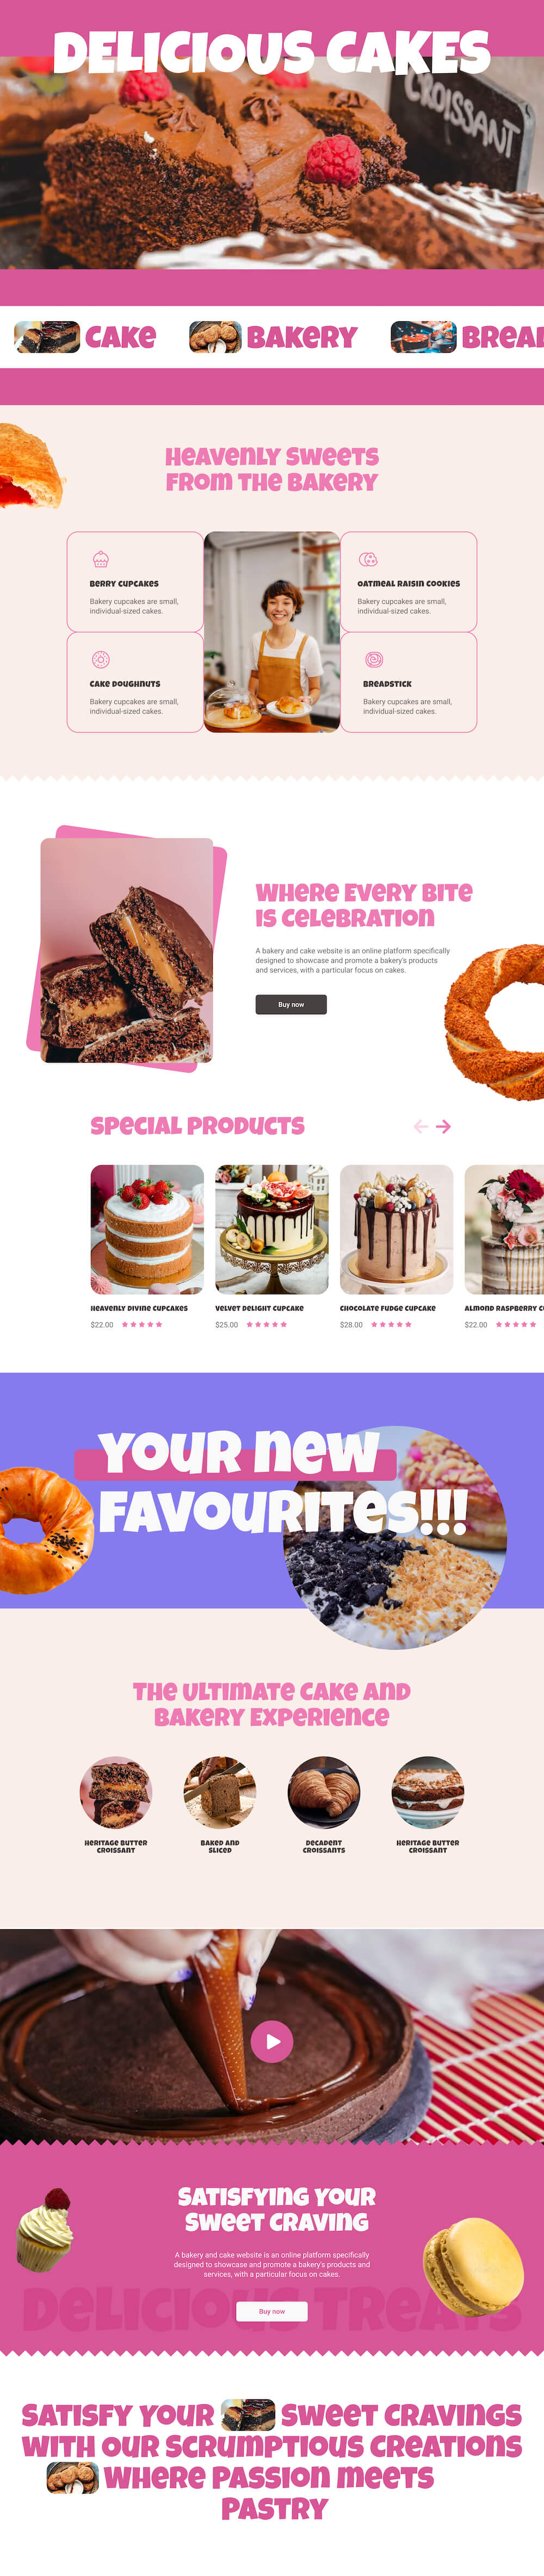 Cake & Bakery layout bundle